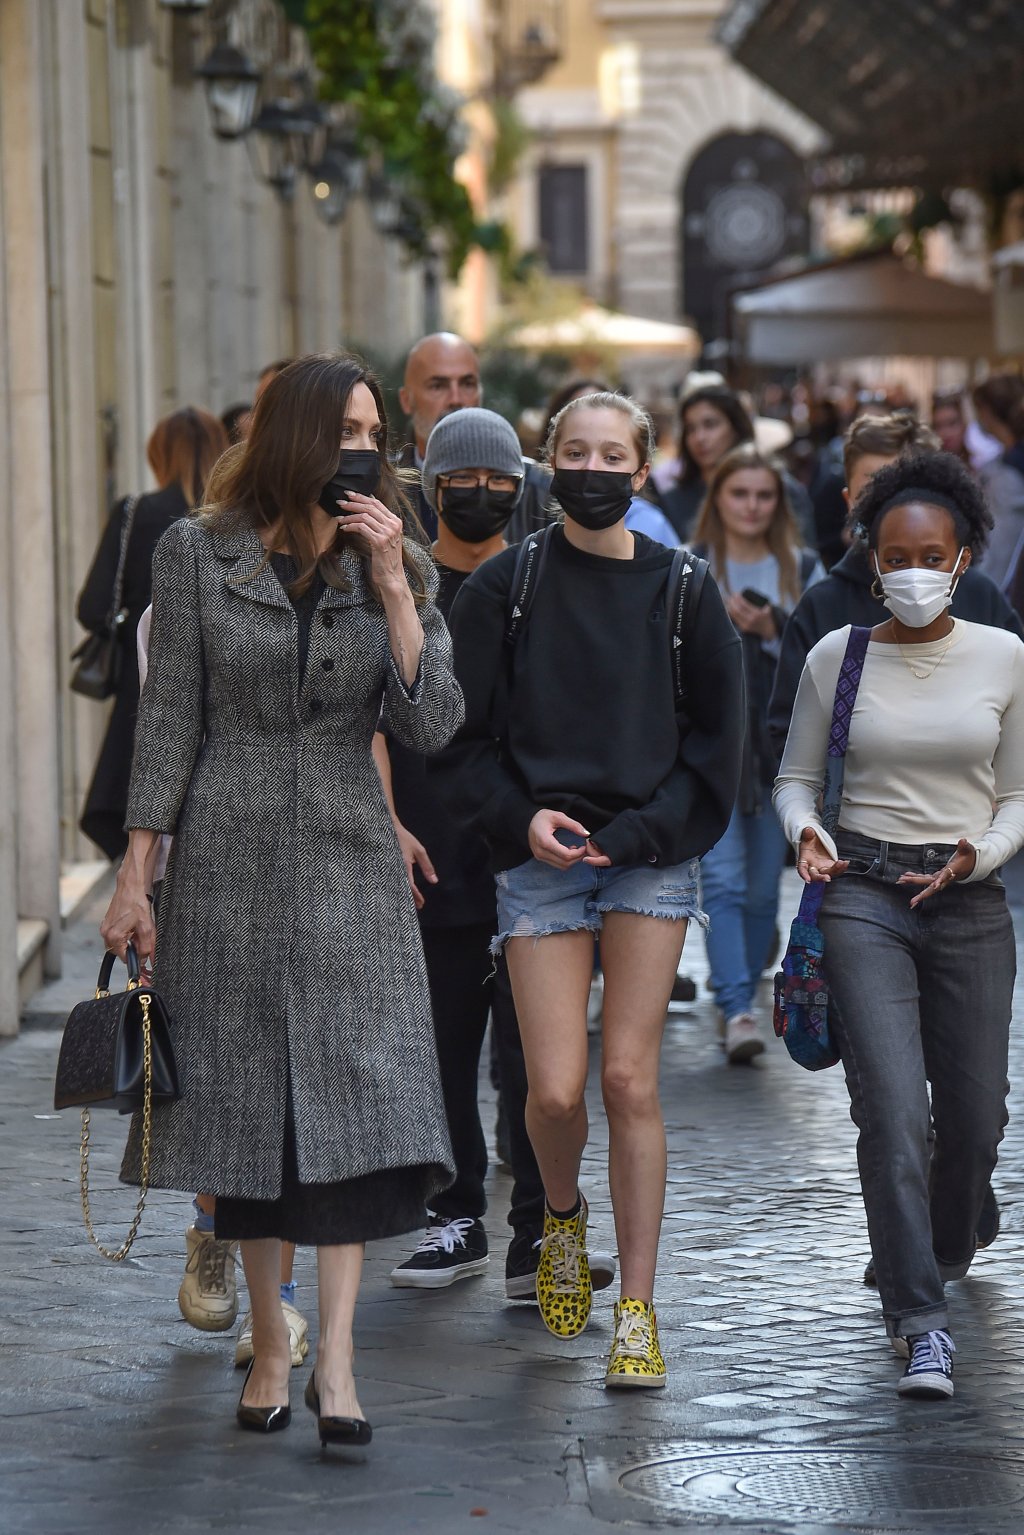 Angelina, Shiloh Jolie-Pitt e Zahara Marley andando pelas ruas da Itália